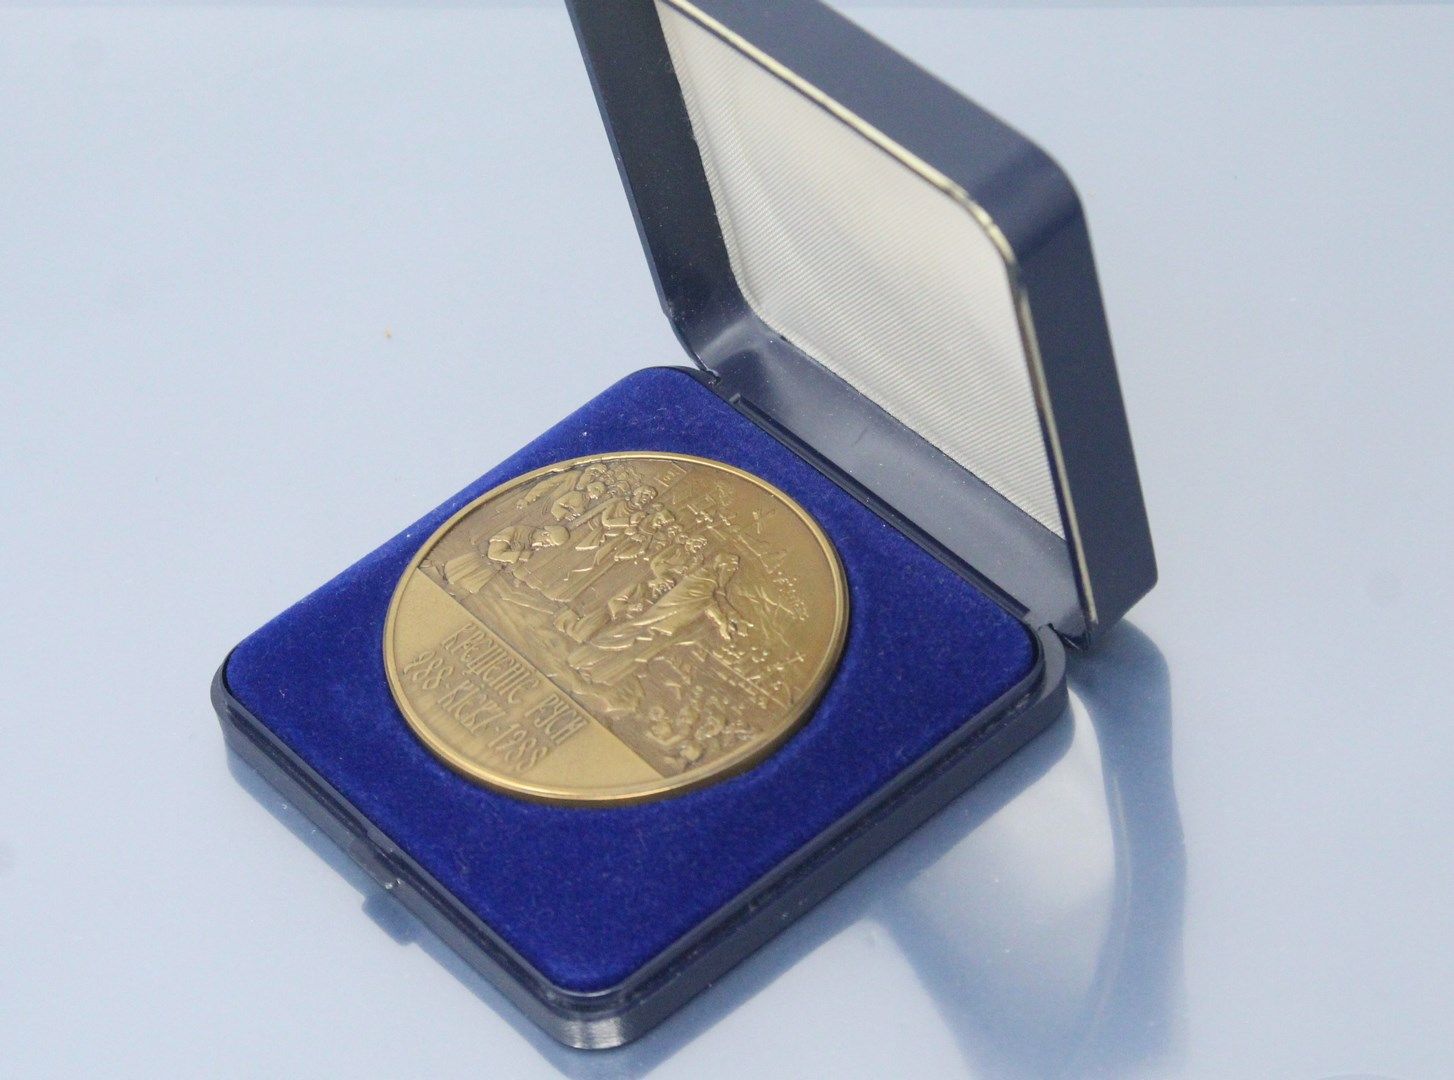 Null Orthodoxe Bronzemedaille mit der Jahreszahl 988-1988 in ihrem Etui.



Gewi&hellip;